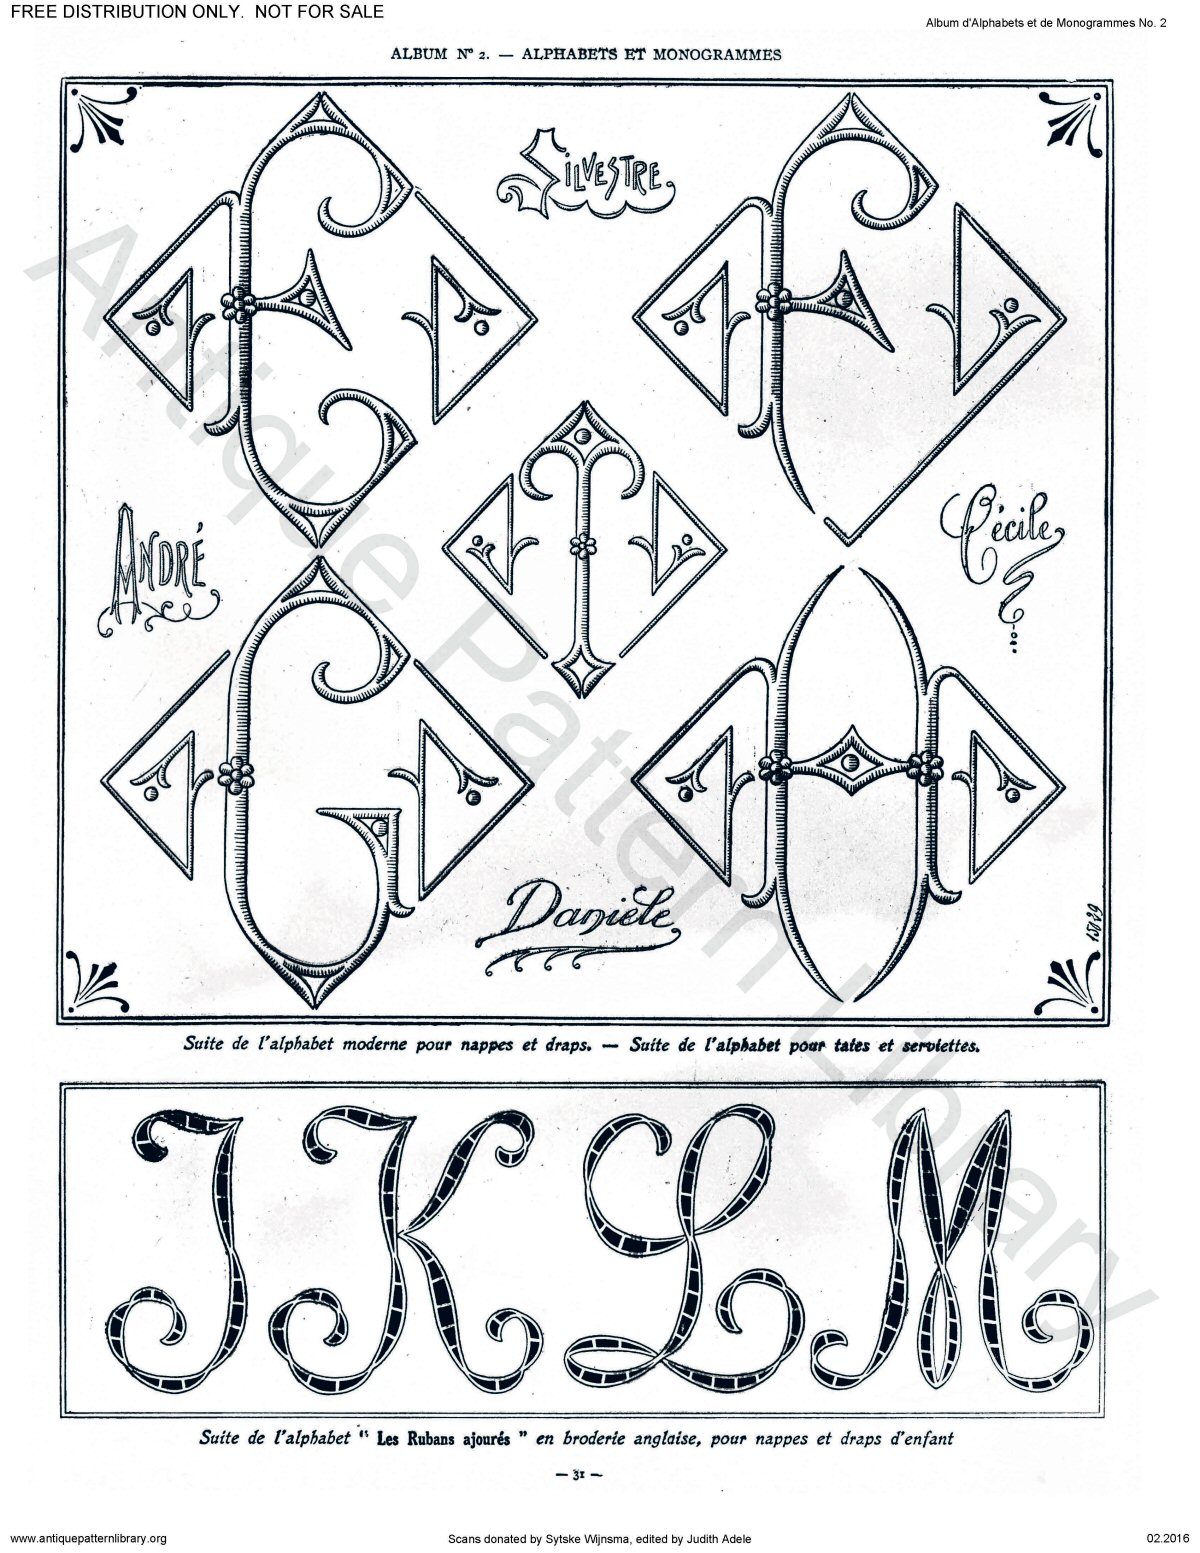 B-YS078 Album d'Alphabets et de Monogrammes No.2